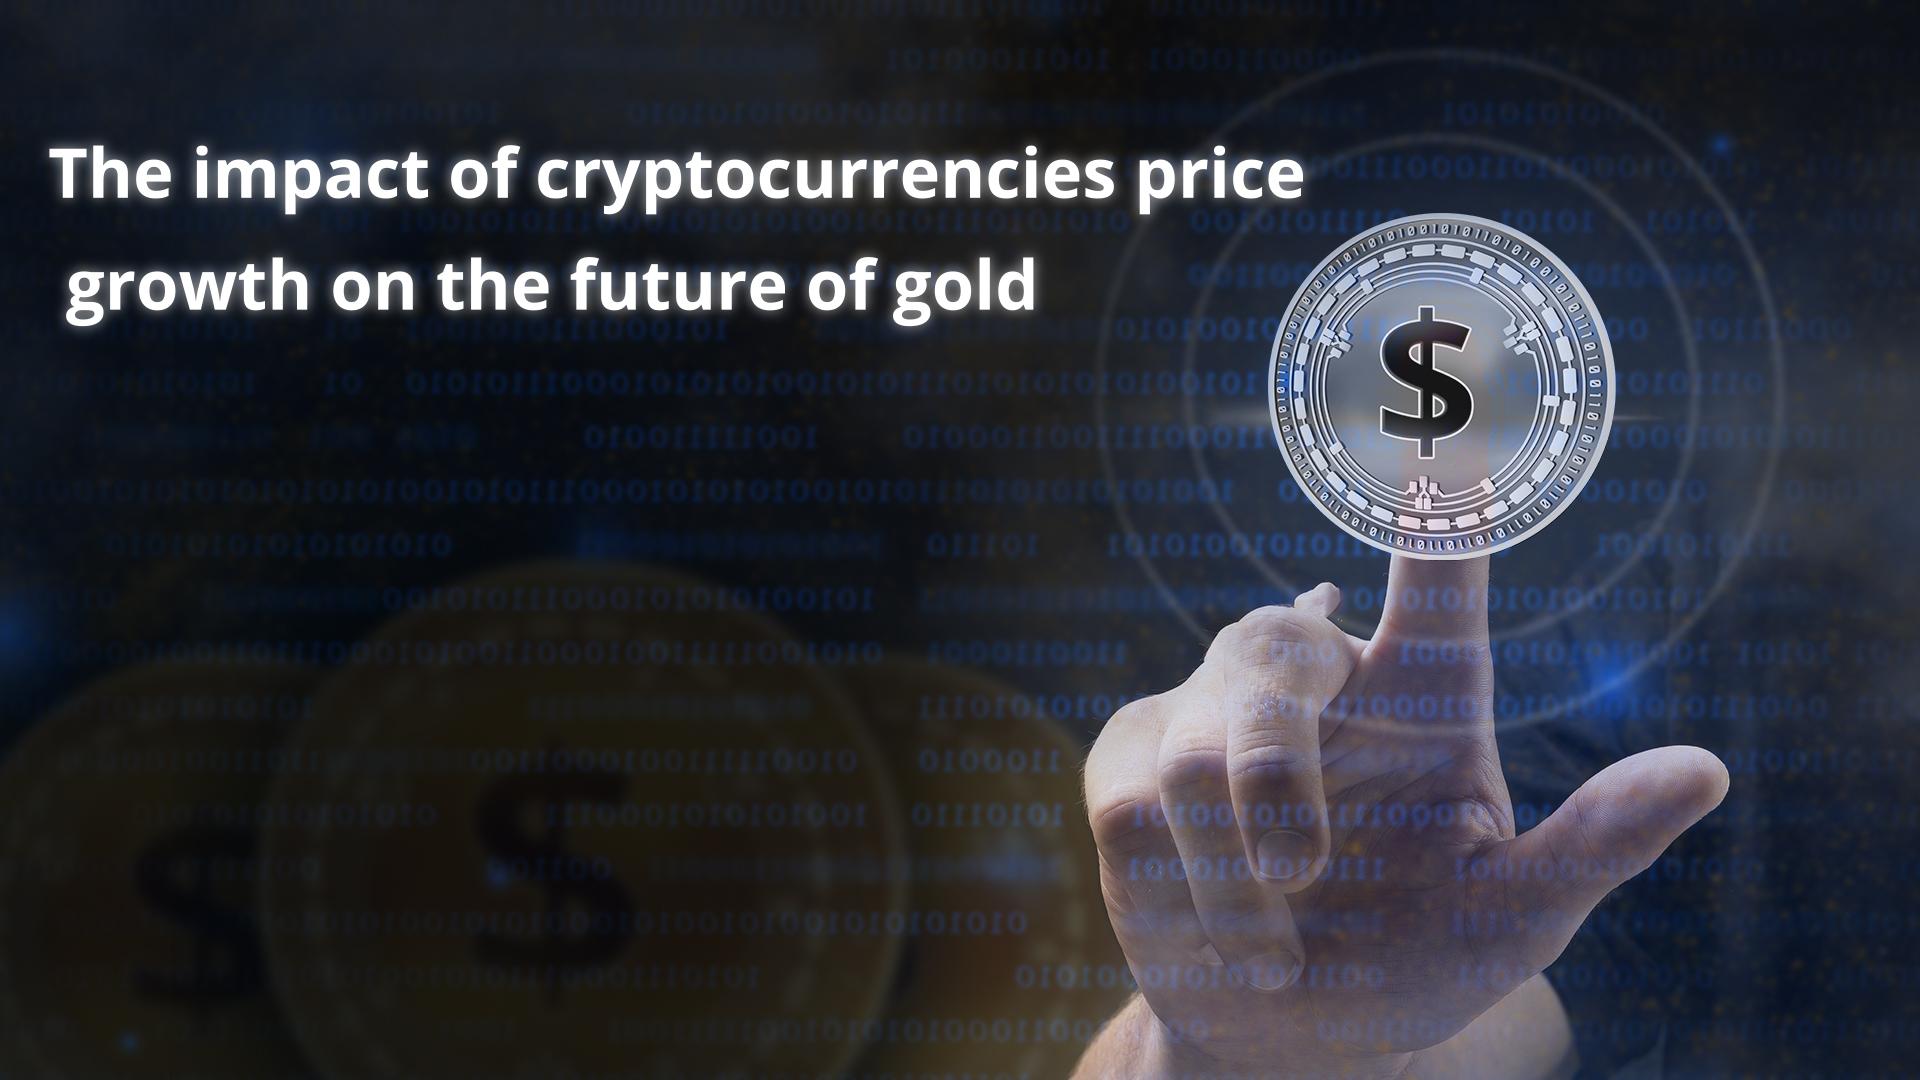 Die Auswirkungen des Preisanstiegs bei den Kryptowährungen auf die Zukunft des Goldes